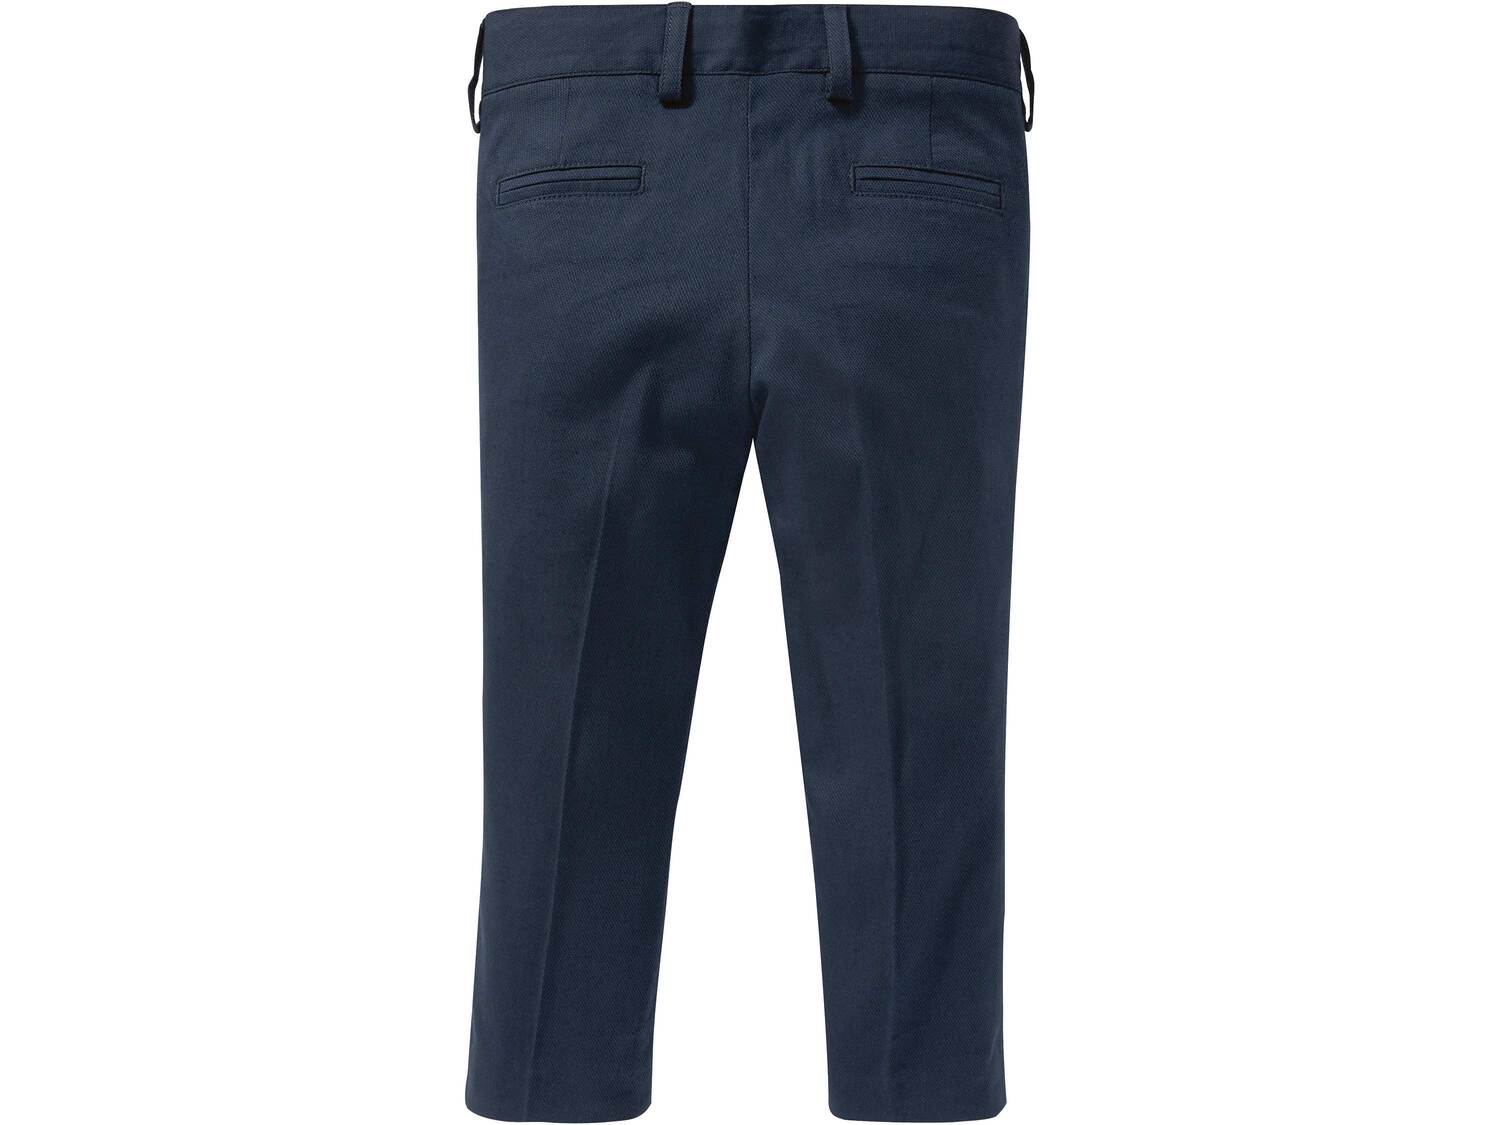 Spodnie garniturowe chłopięce Lupilu, cena 35,00 PLN 
- rozmiary: 92-116
- wysoka ...